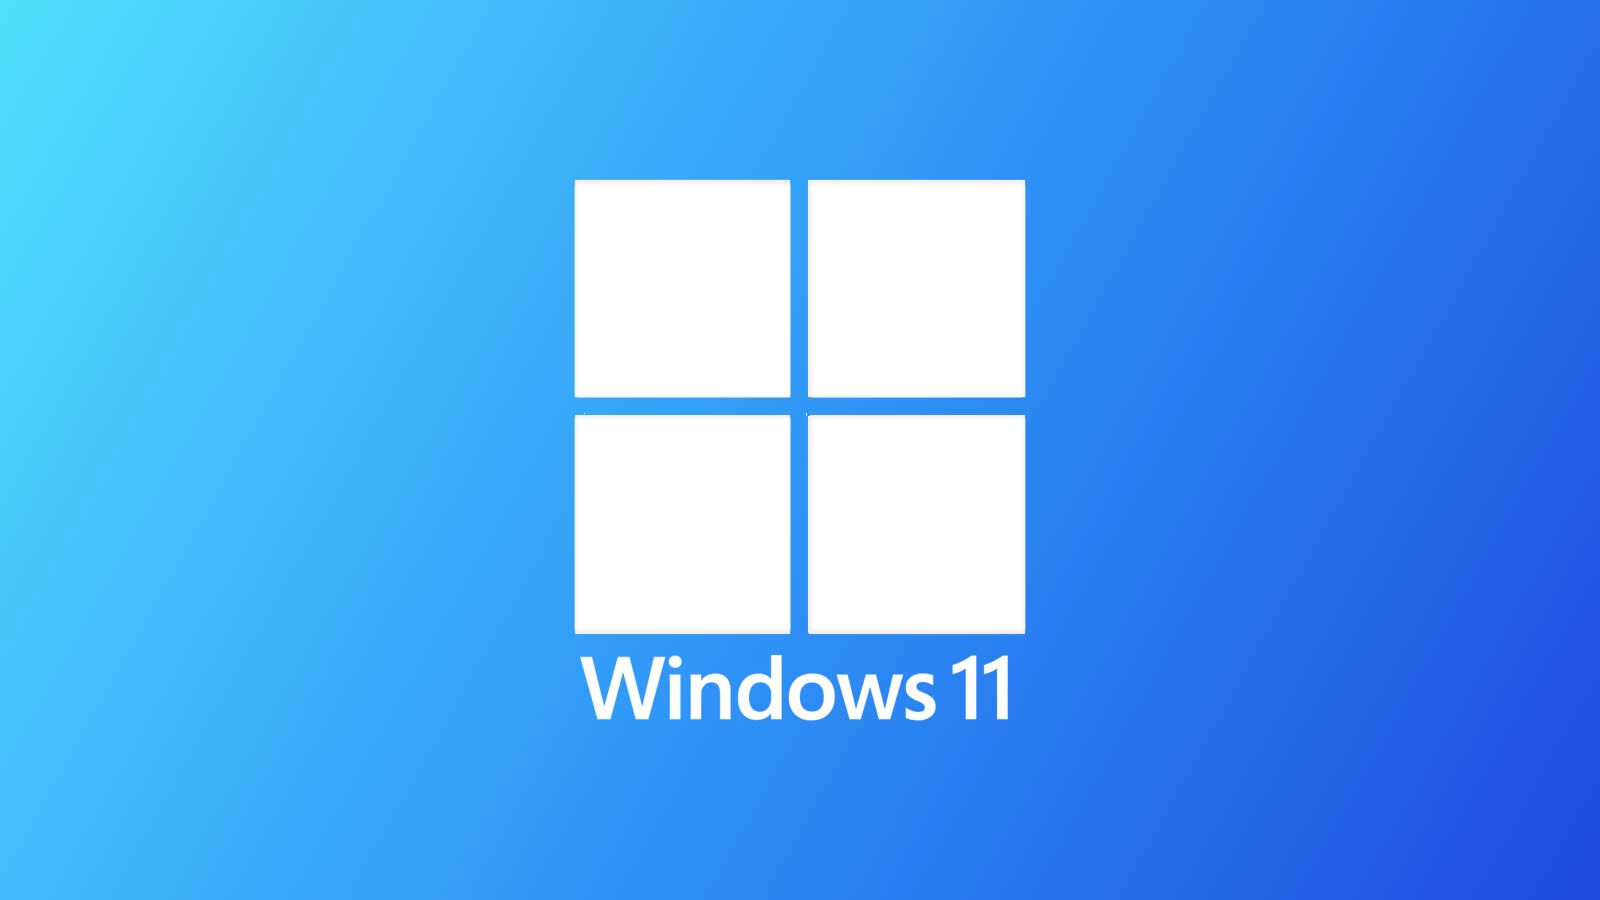 Microsoft sorprende a los usuarios de Windows 11 IMPORTANTE cambio de PC